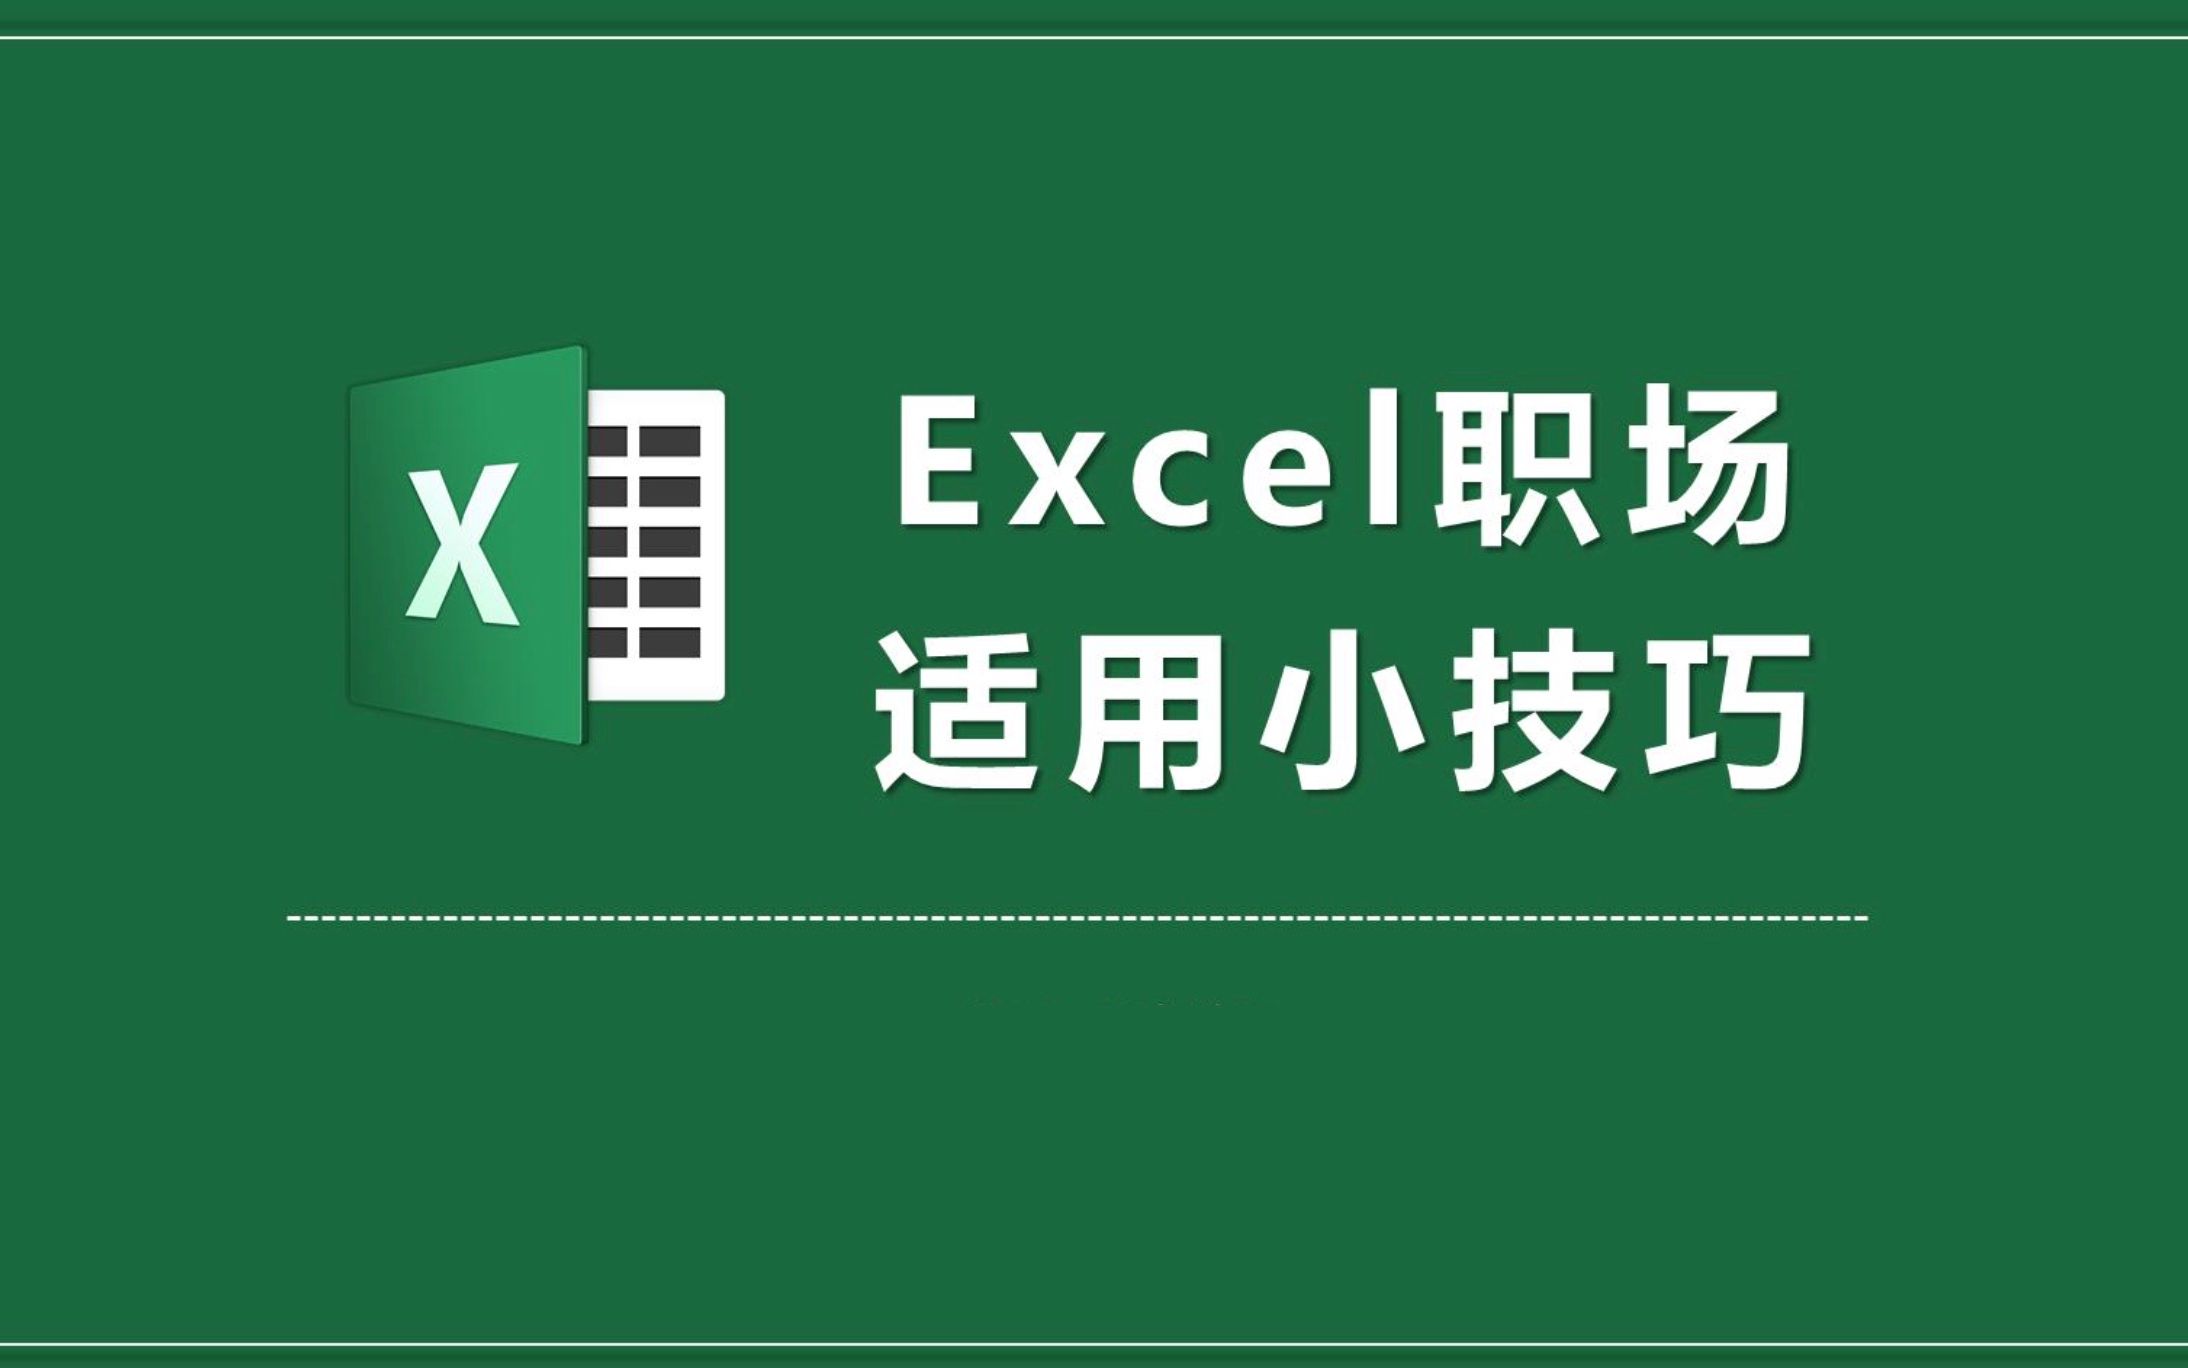 Excel办公技巧分享，程序员分享如何快速替换身份证号码为星号